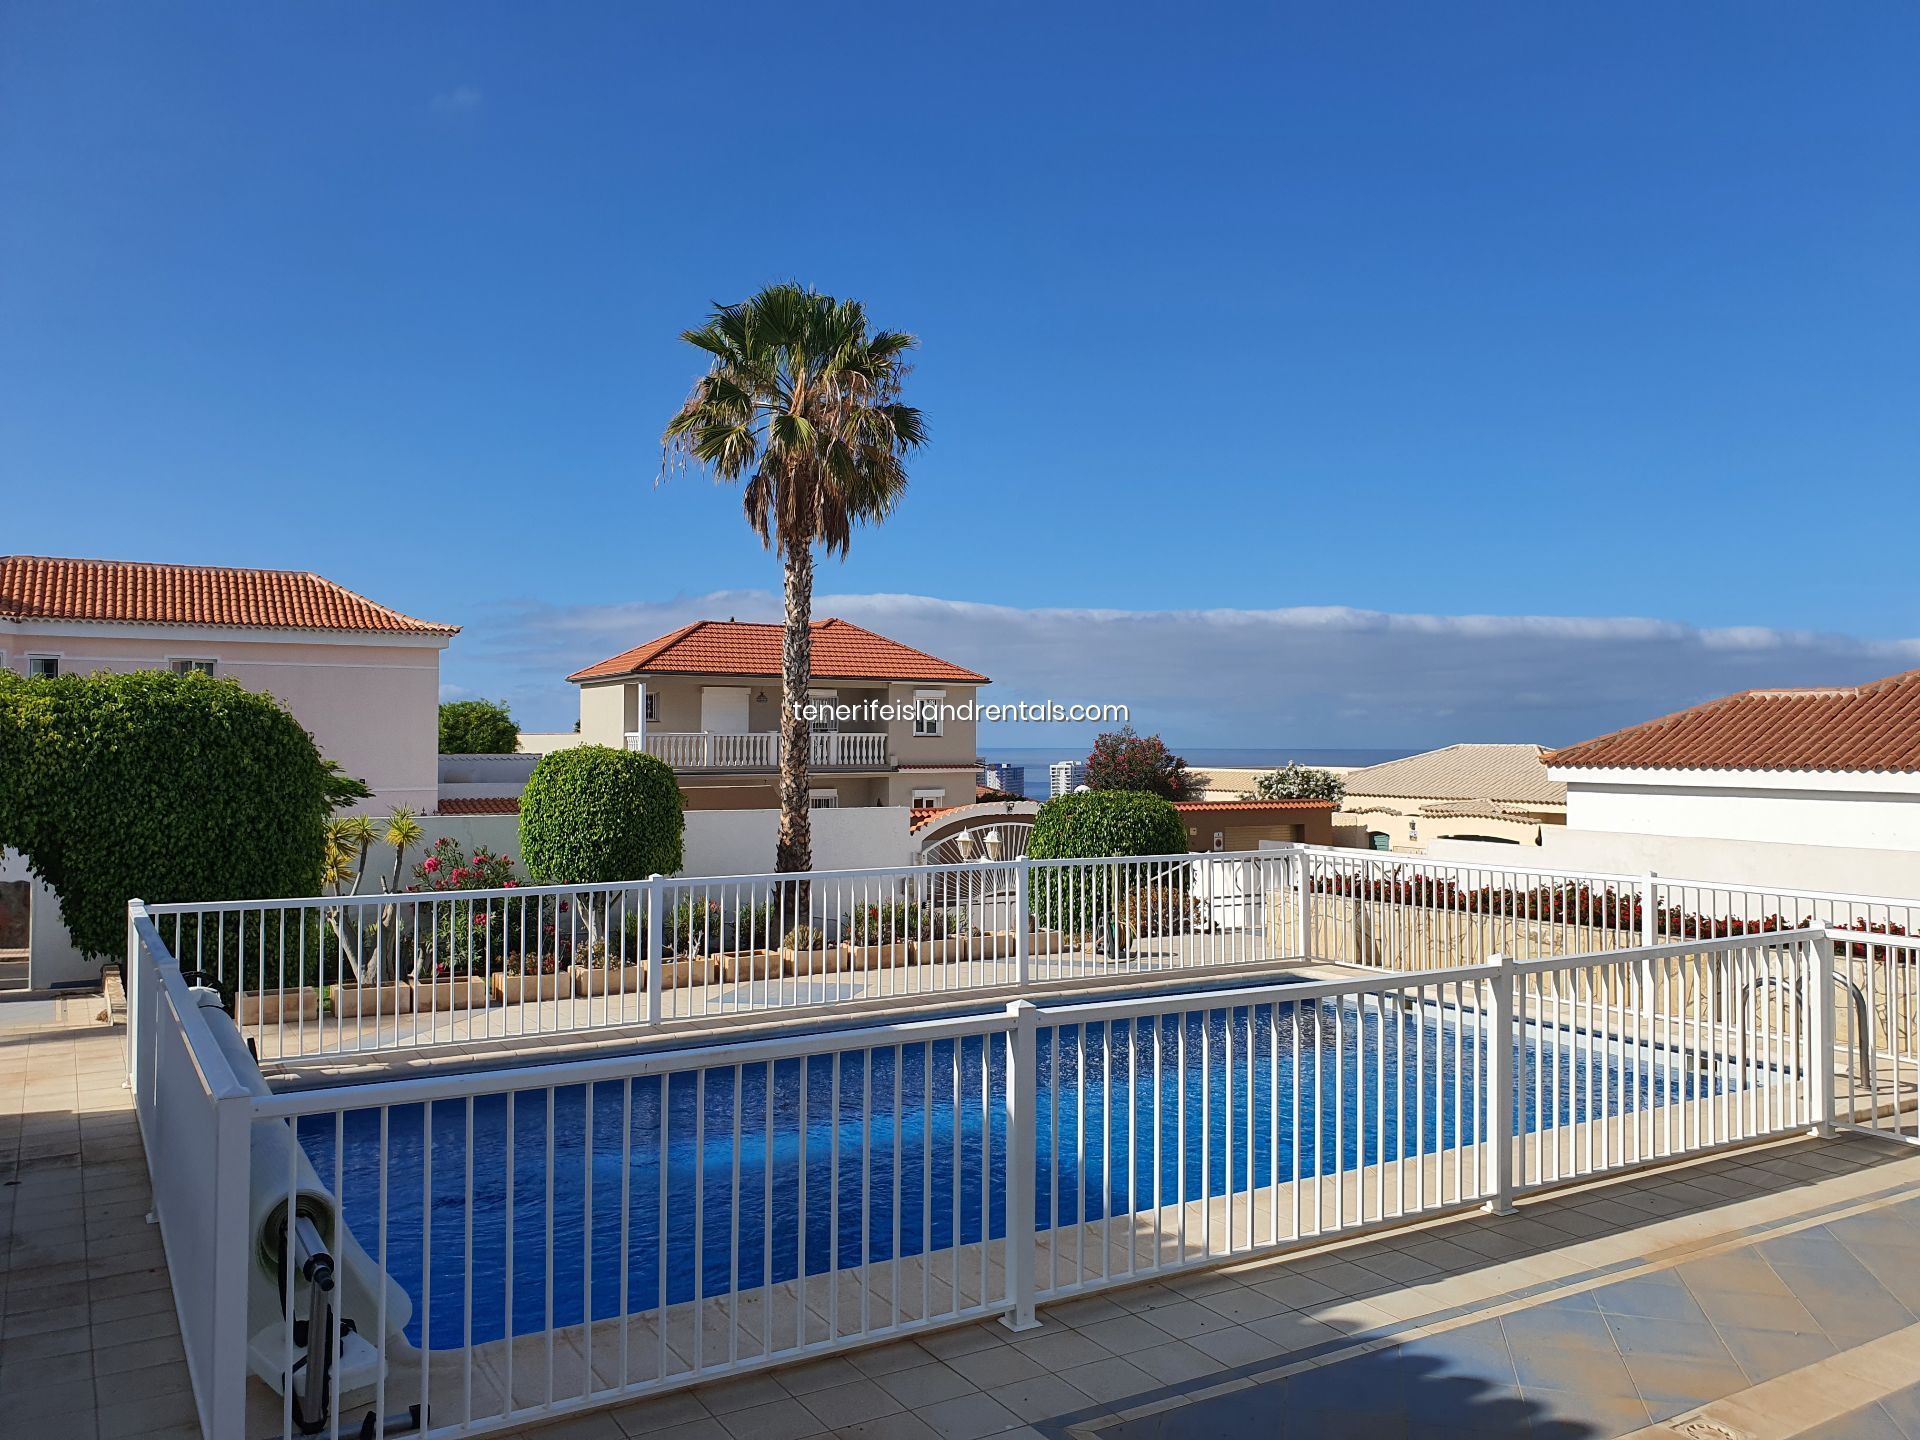 Villa in Callao Salvaje marketed by Tenerife Island Rentals